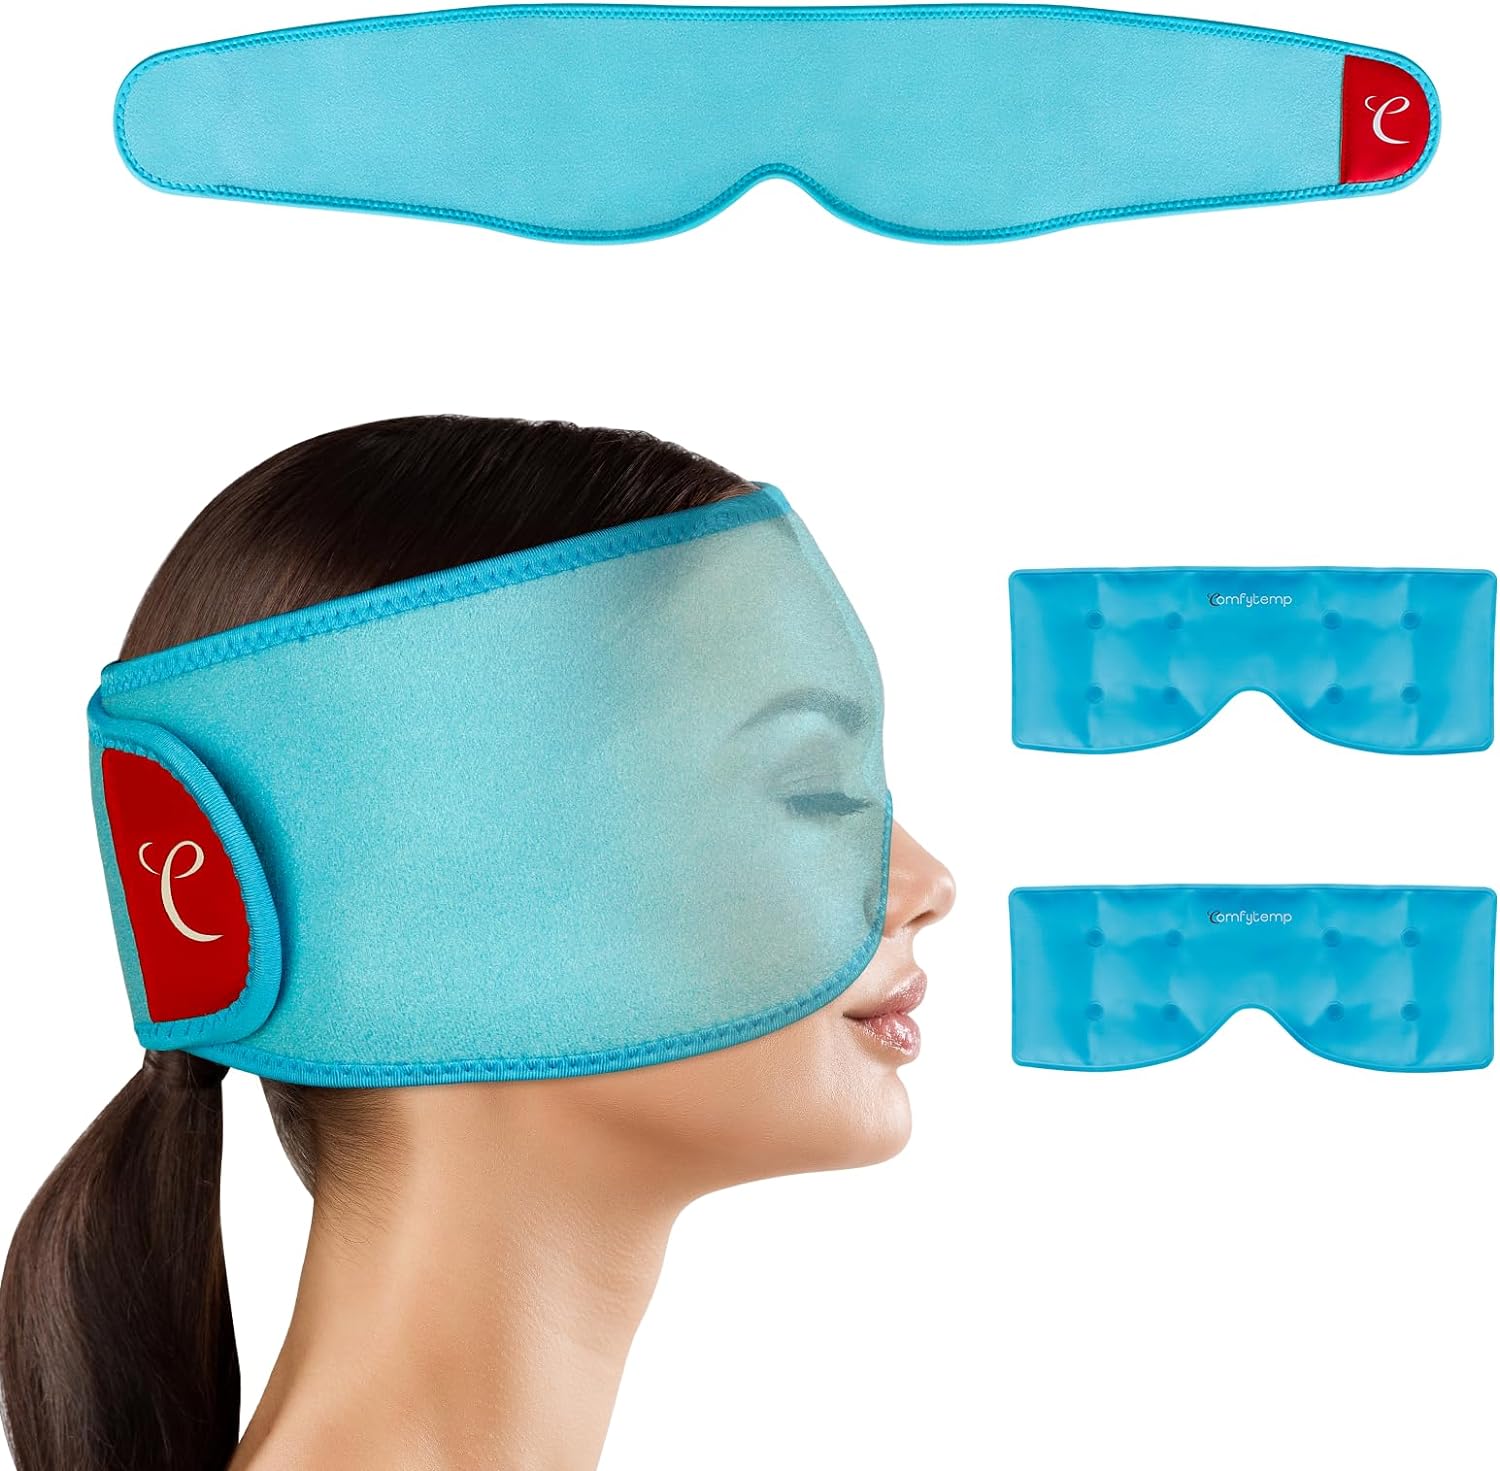 Comfytemp Cooling Eye Mask